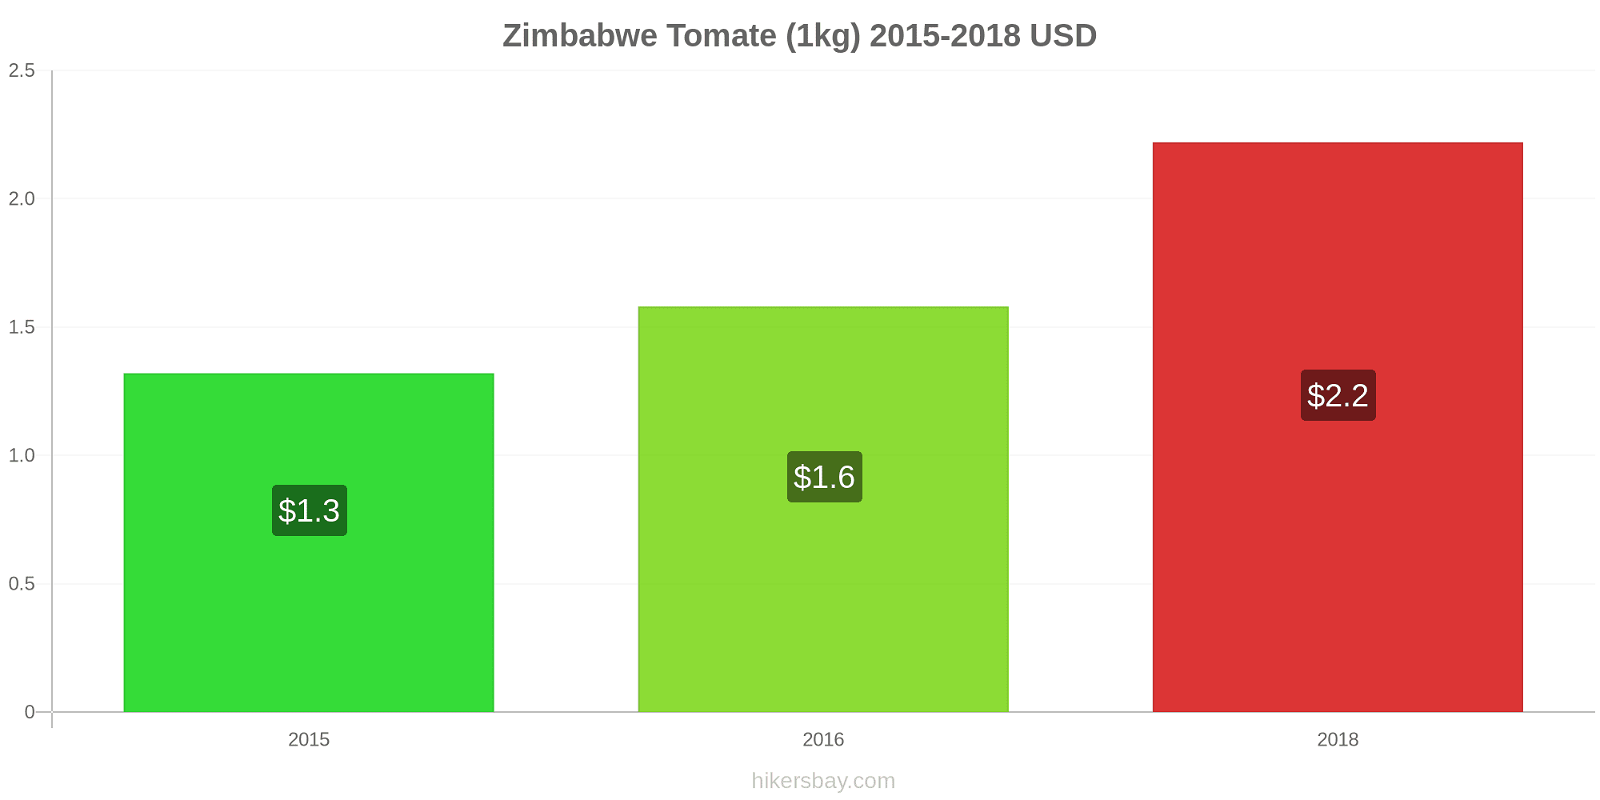 Zimbabwe changements de prix Tomate (1kg) hikersbay.com